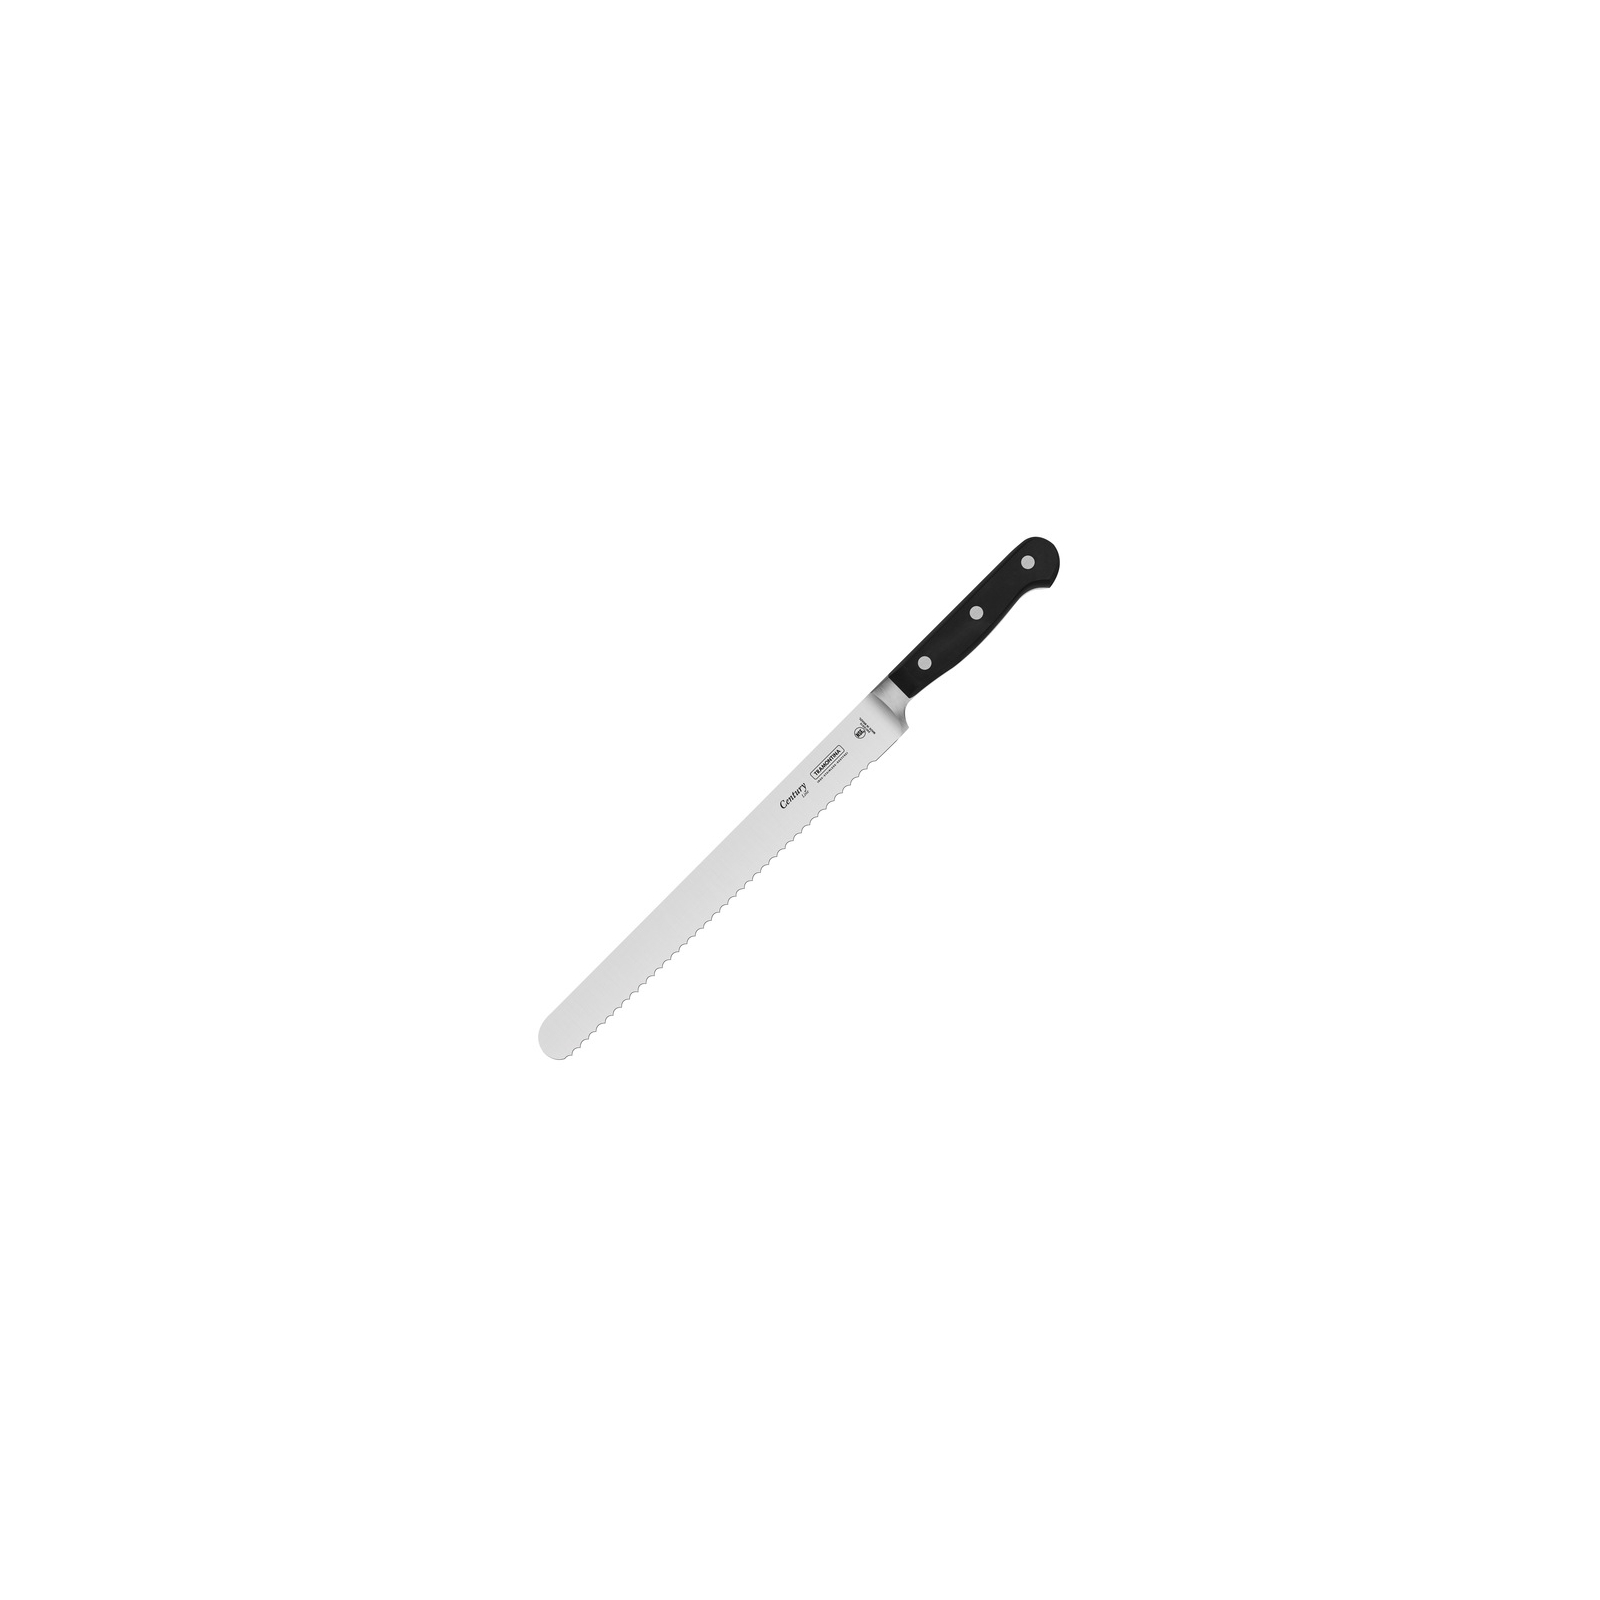 Кухонный нож Tramontina Century слайсер, волнистая заточка 254 мм Black (24012/110)